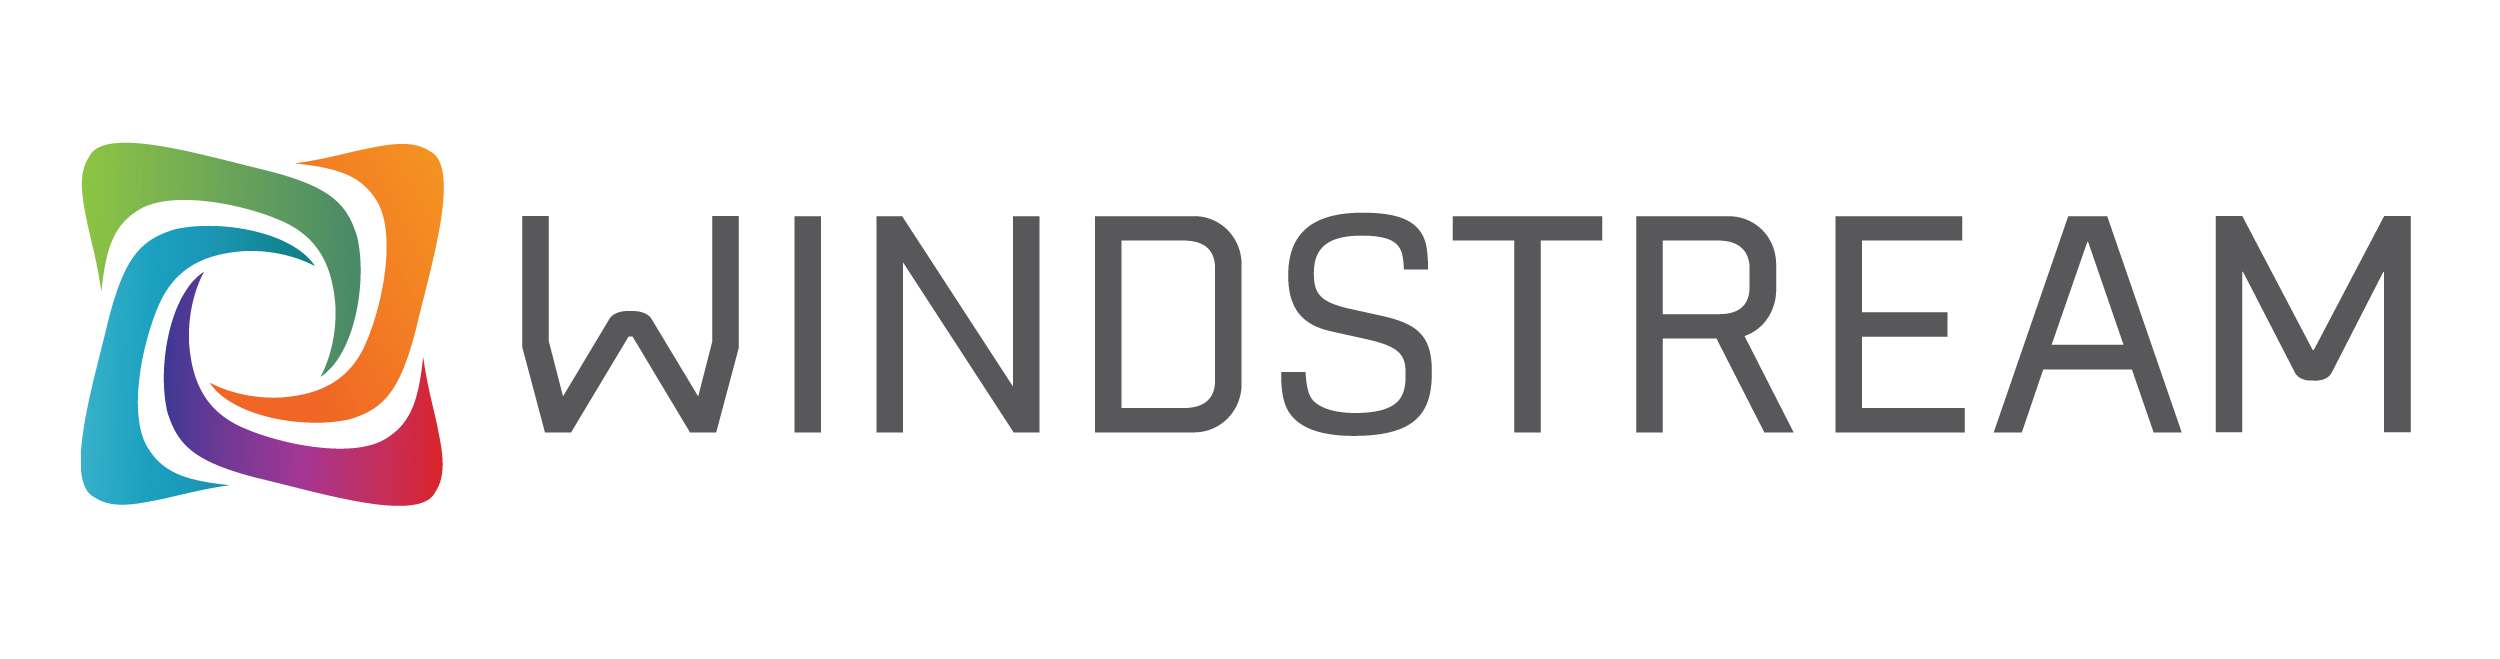 Windstream Brand Logo